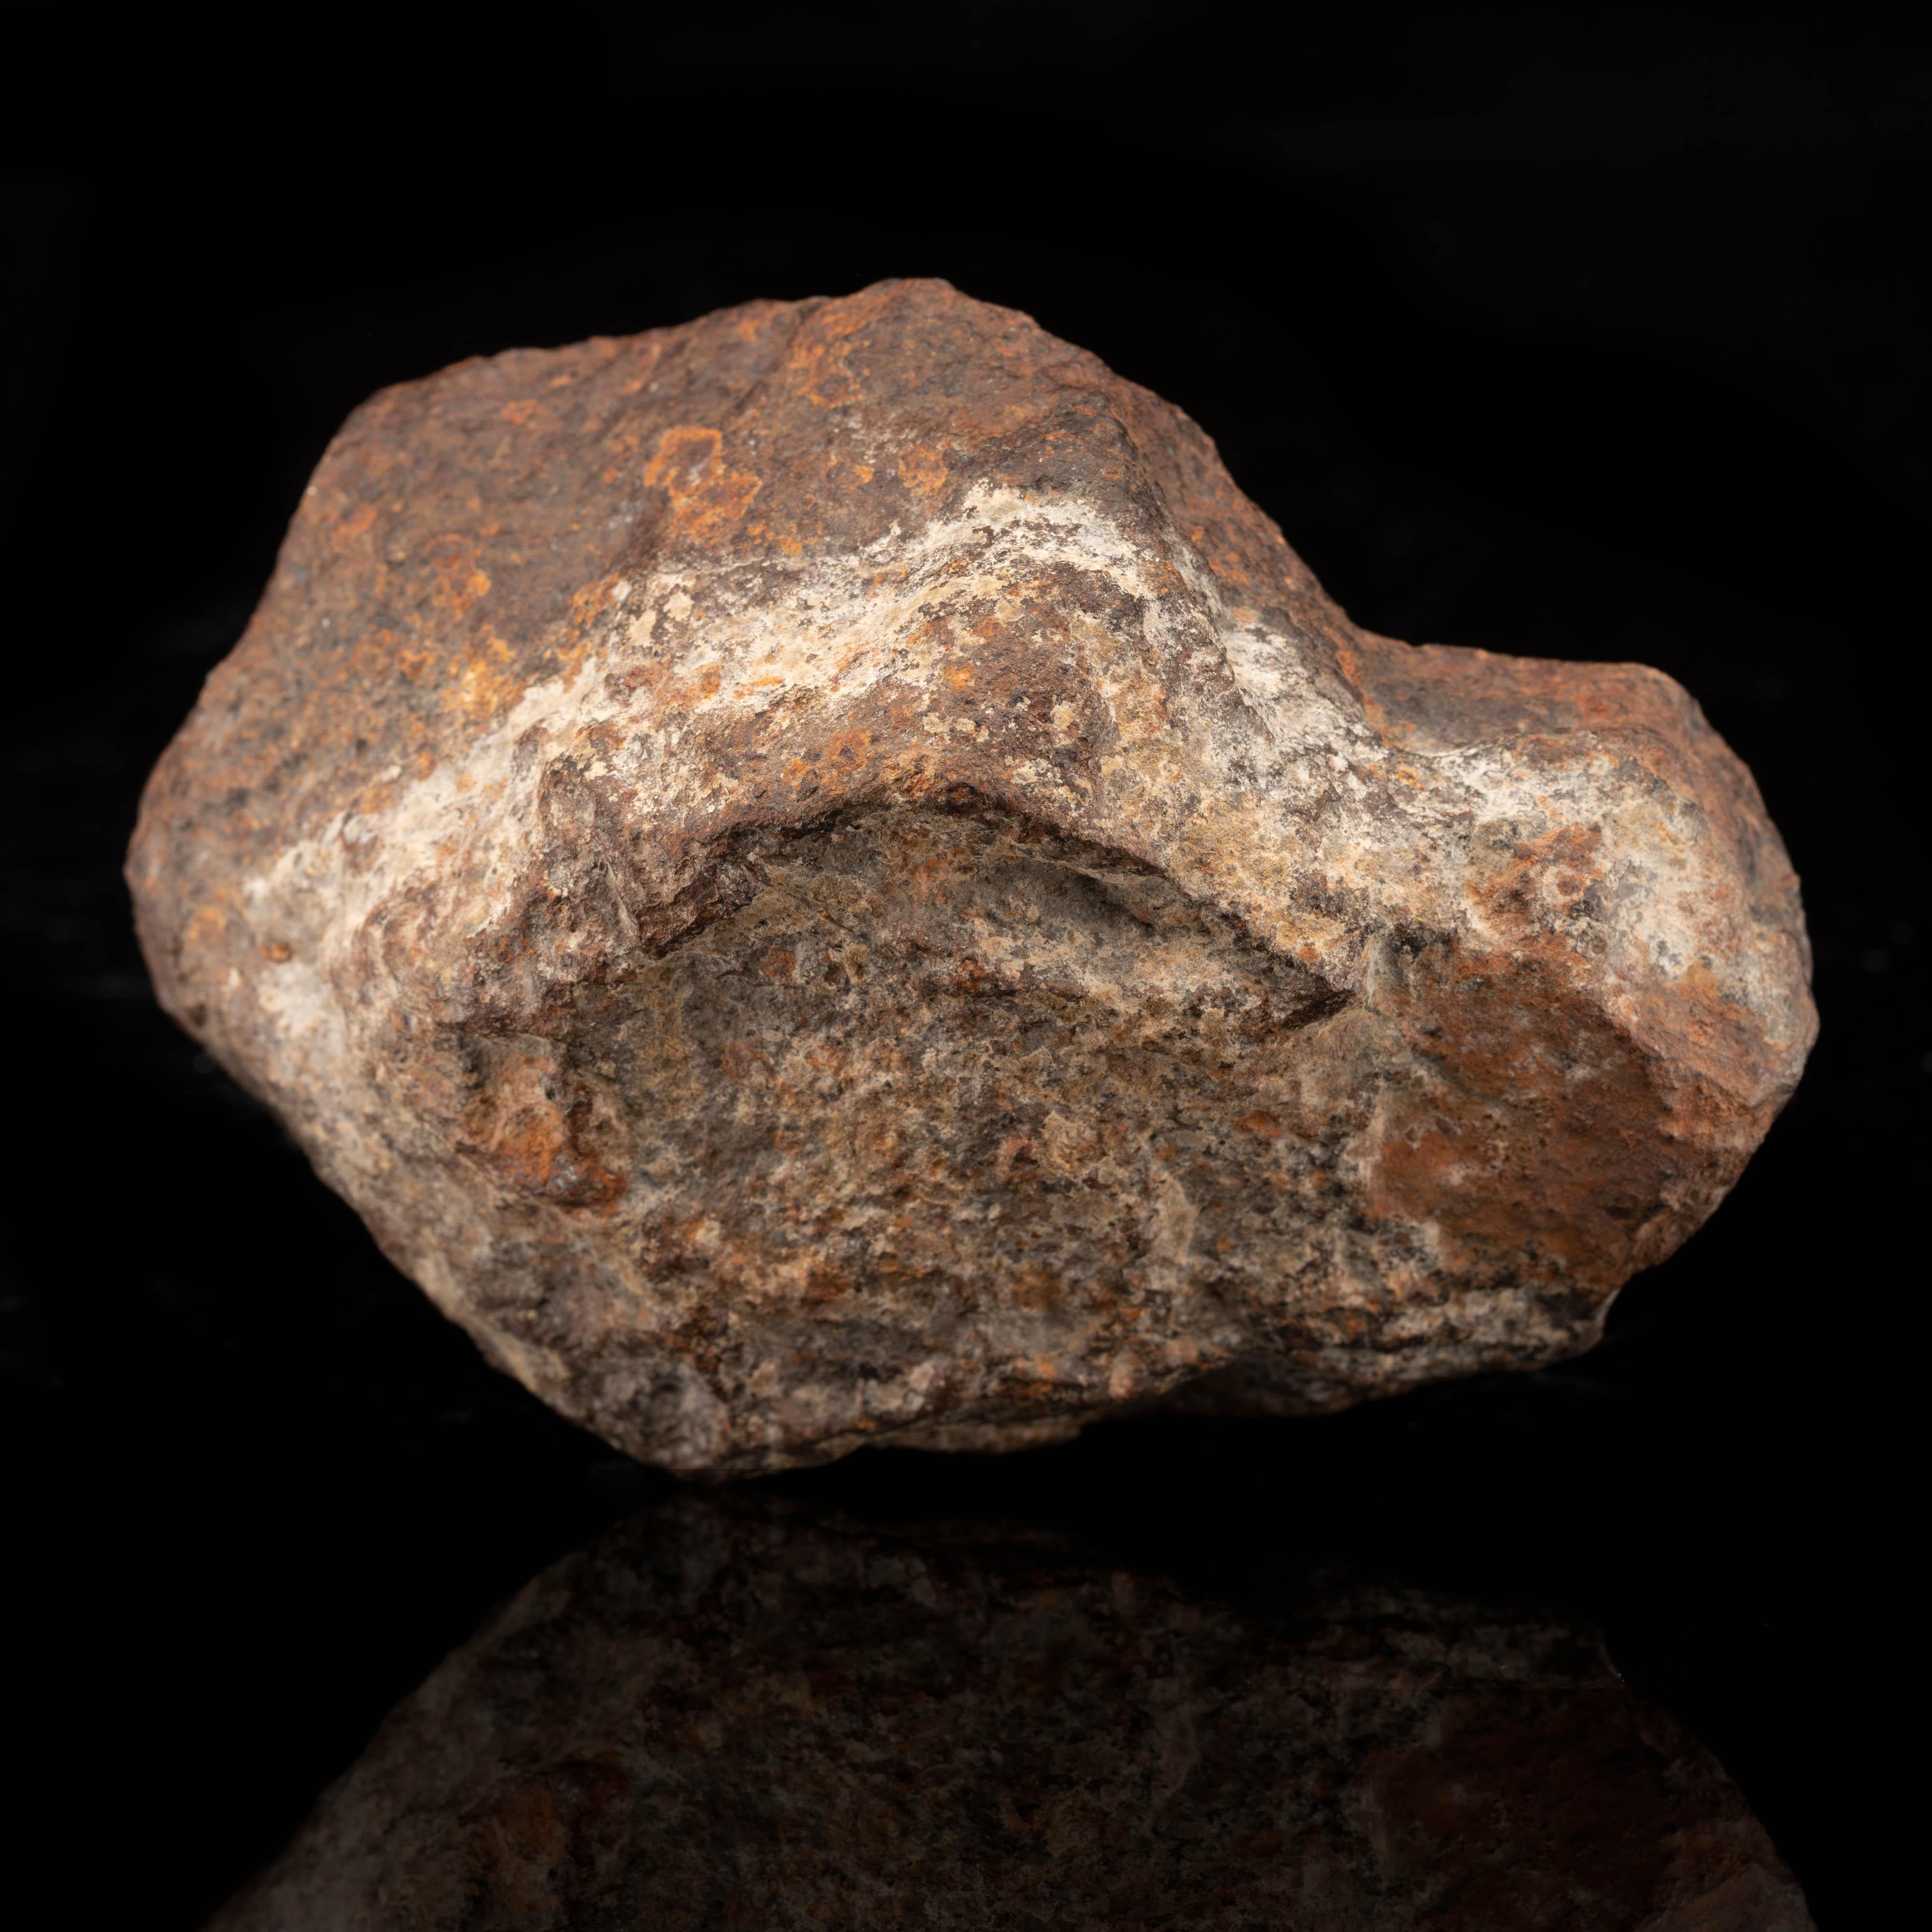 Trouvée en 2002 à Franconia, à Mojave, en Arizona, cette météorite chondrite H5 est éparpillée parmi de nombreuses autres variétés de métorite dans ce que l'on a appelé une 